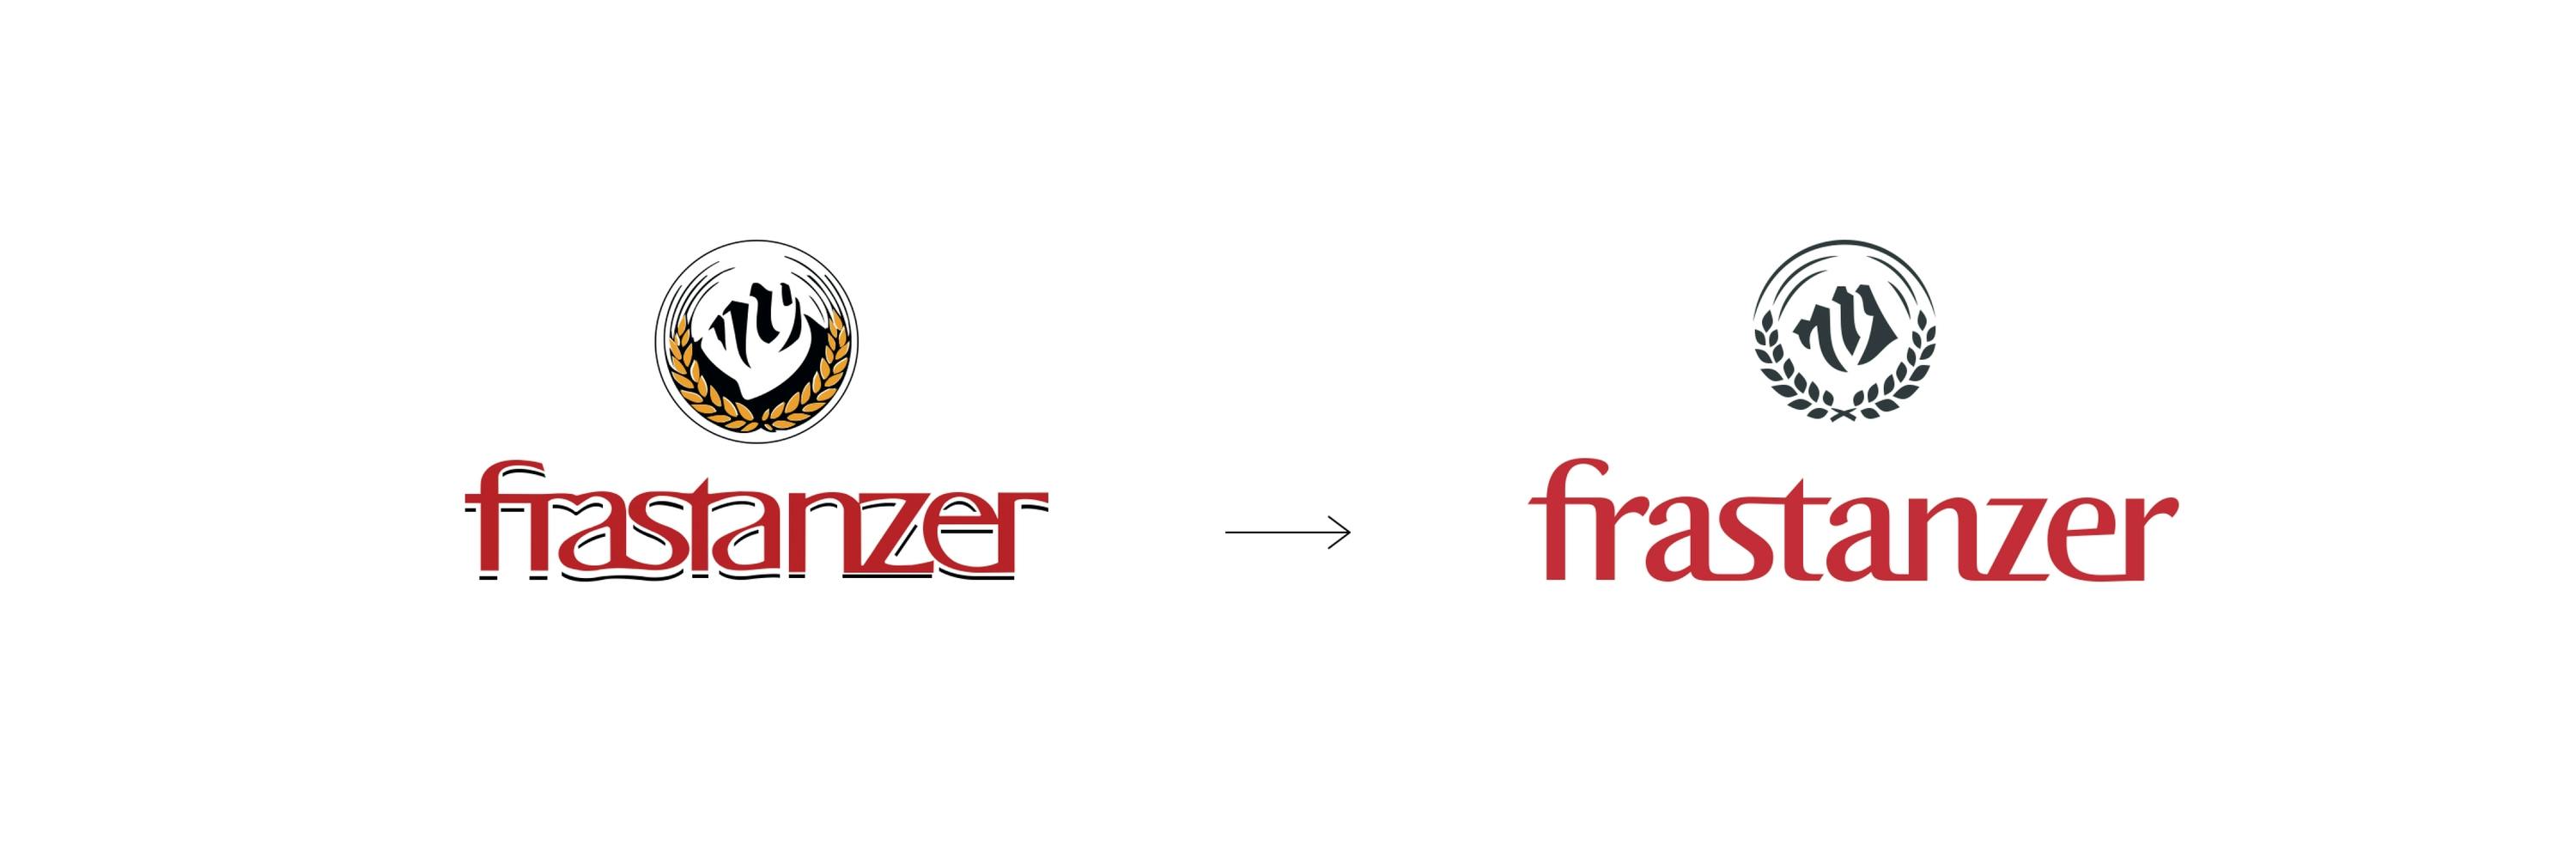 Vergleich des alten und neuen Frastanzer Logos © gobiq